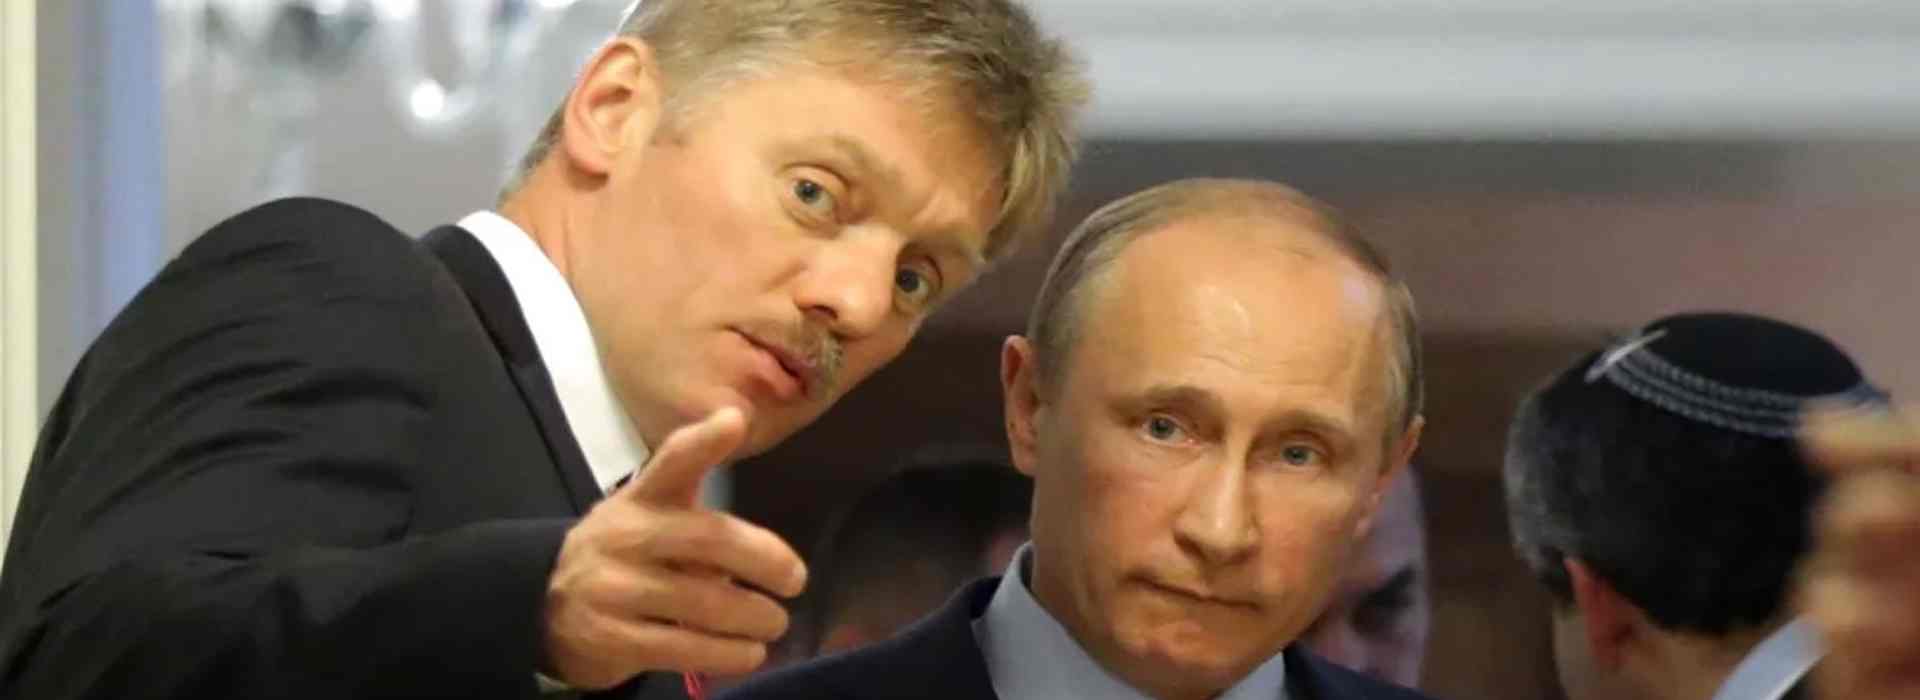 Crisi ucraina: Putin disponibile a confronto con Zelensky